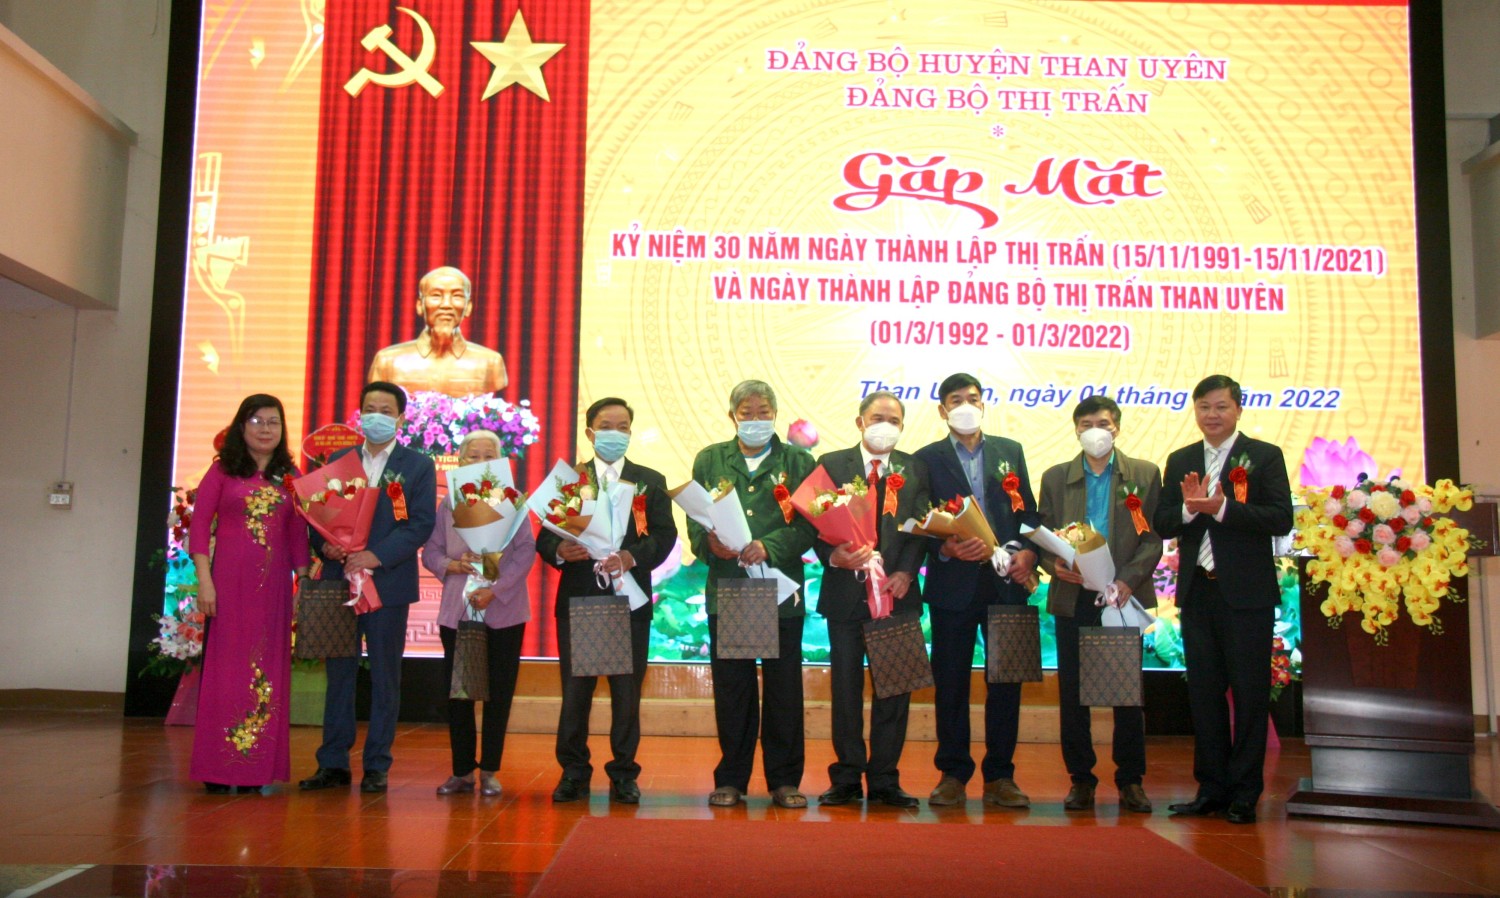 Lãnh đạo Đảng ủy thị trấn Than Uyên tặng quà cho các đồng chí nguyên lãnh đạo thị trấn qua các thời kỳ